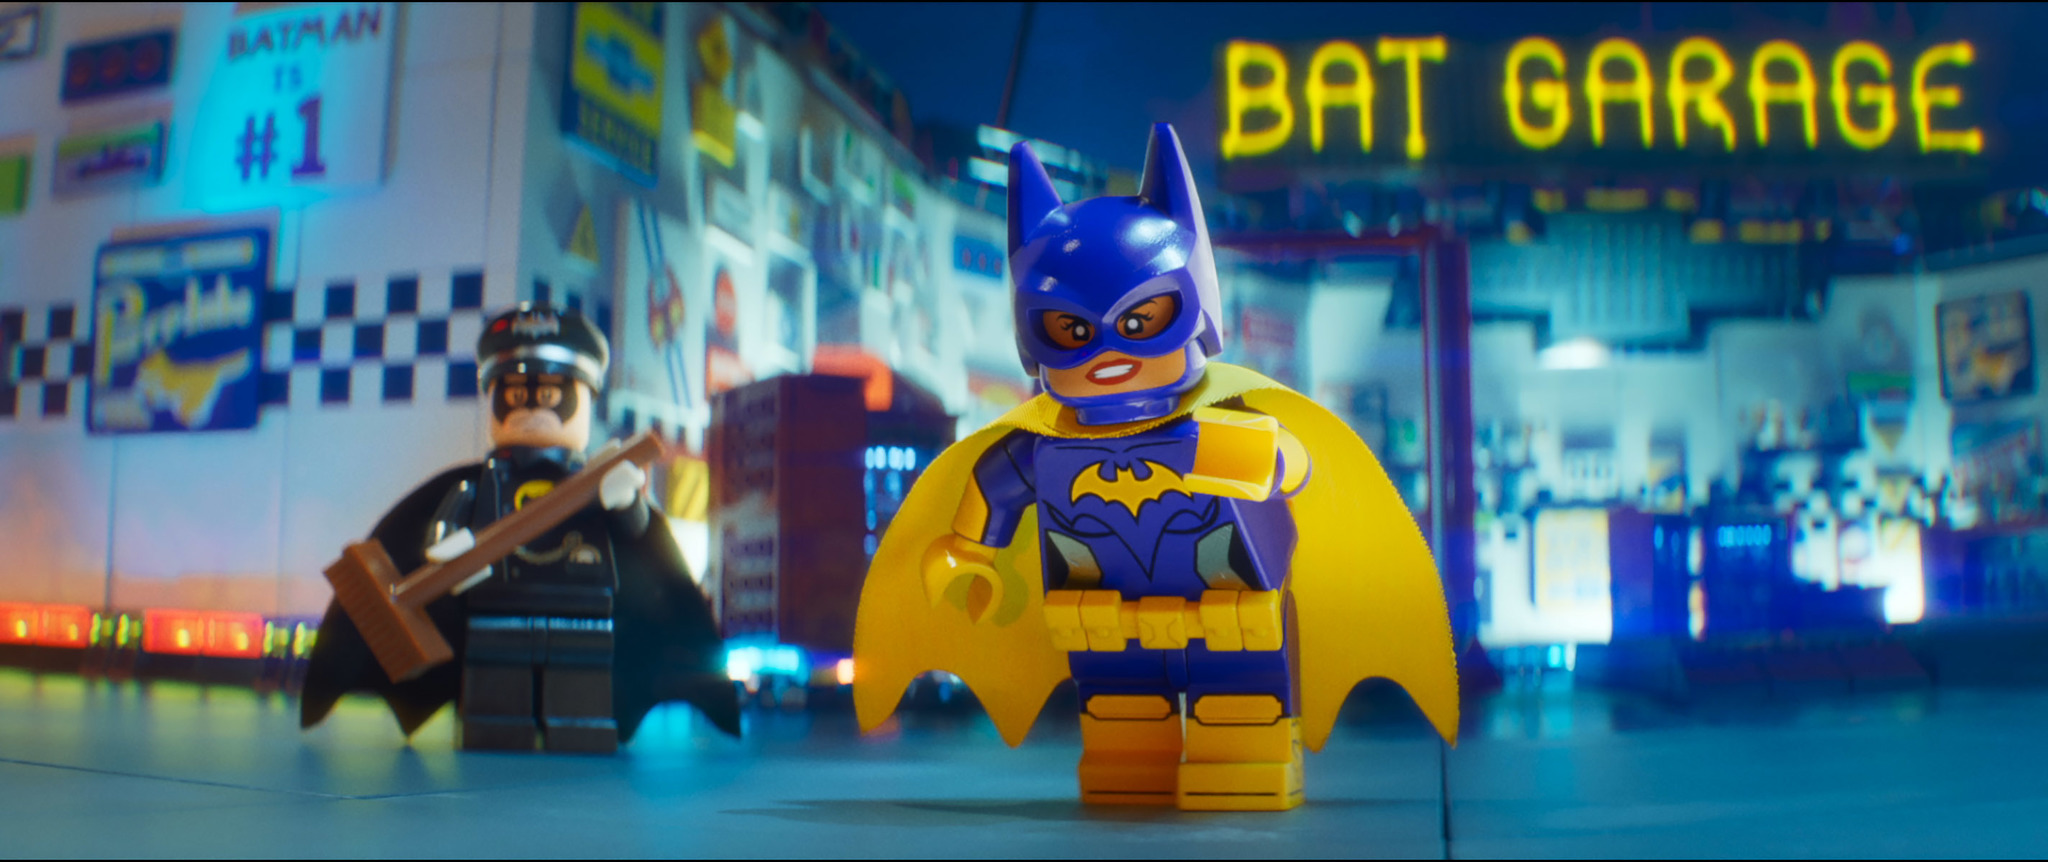 Фото - Лего Фильм: Бэтмен: 2048x862 / 415 Кб